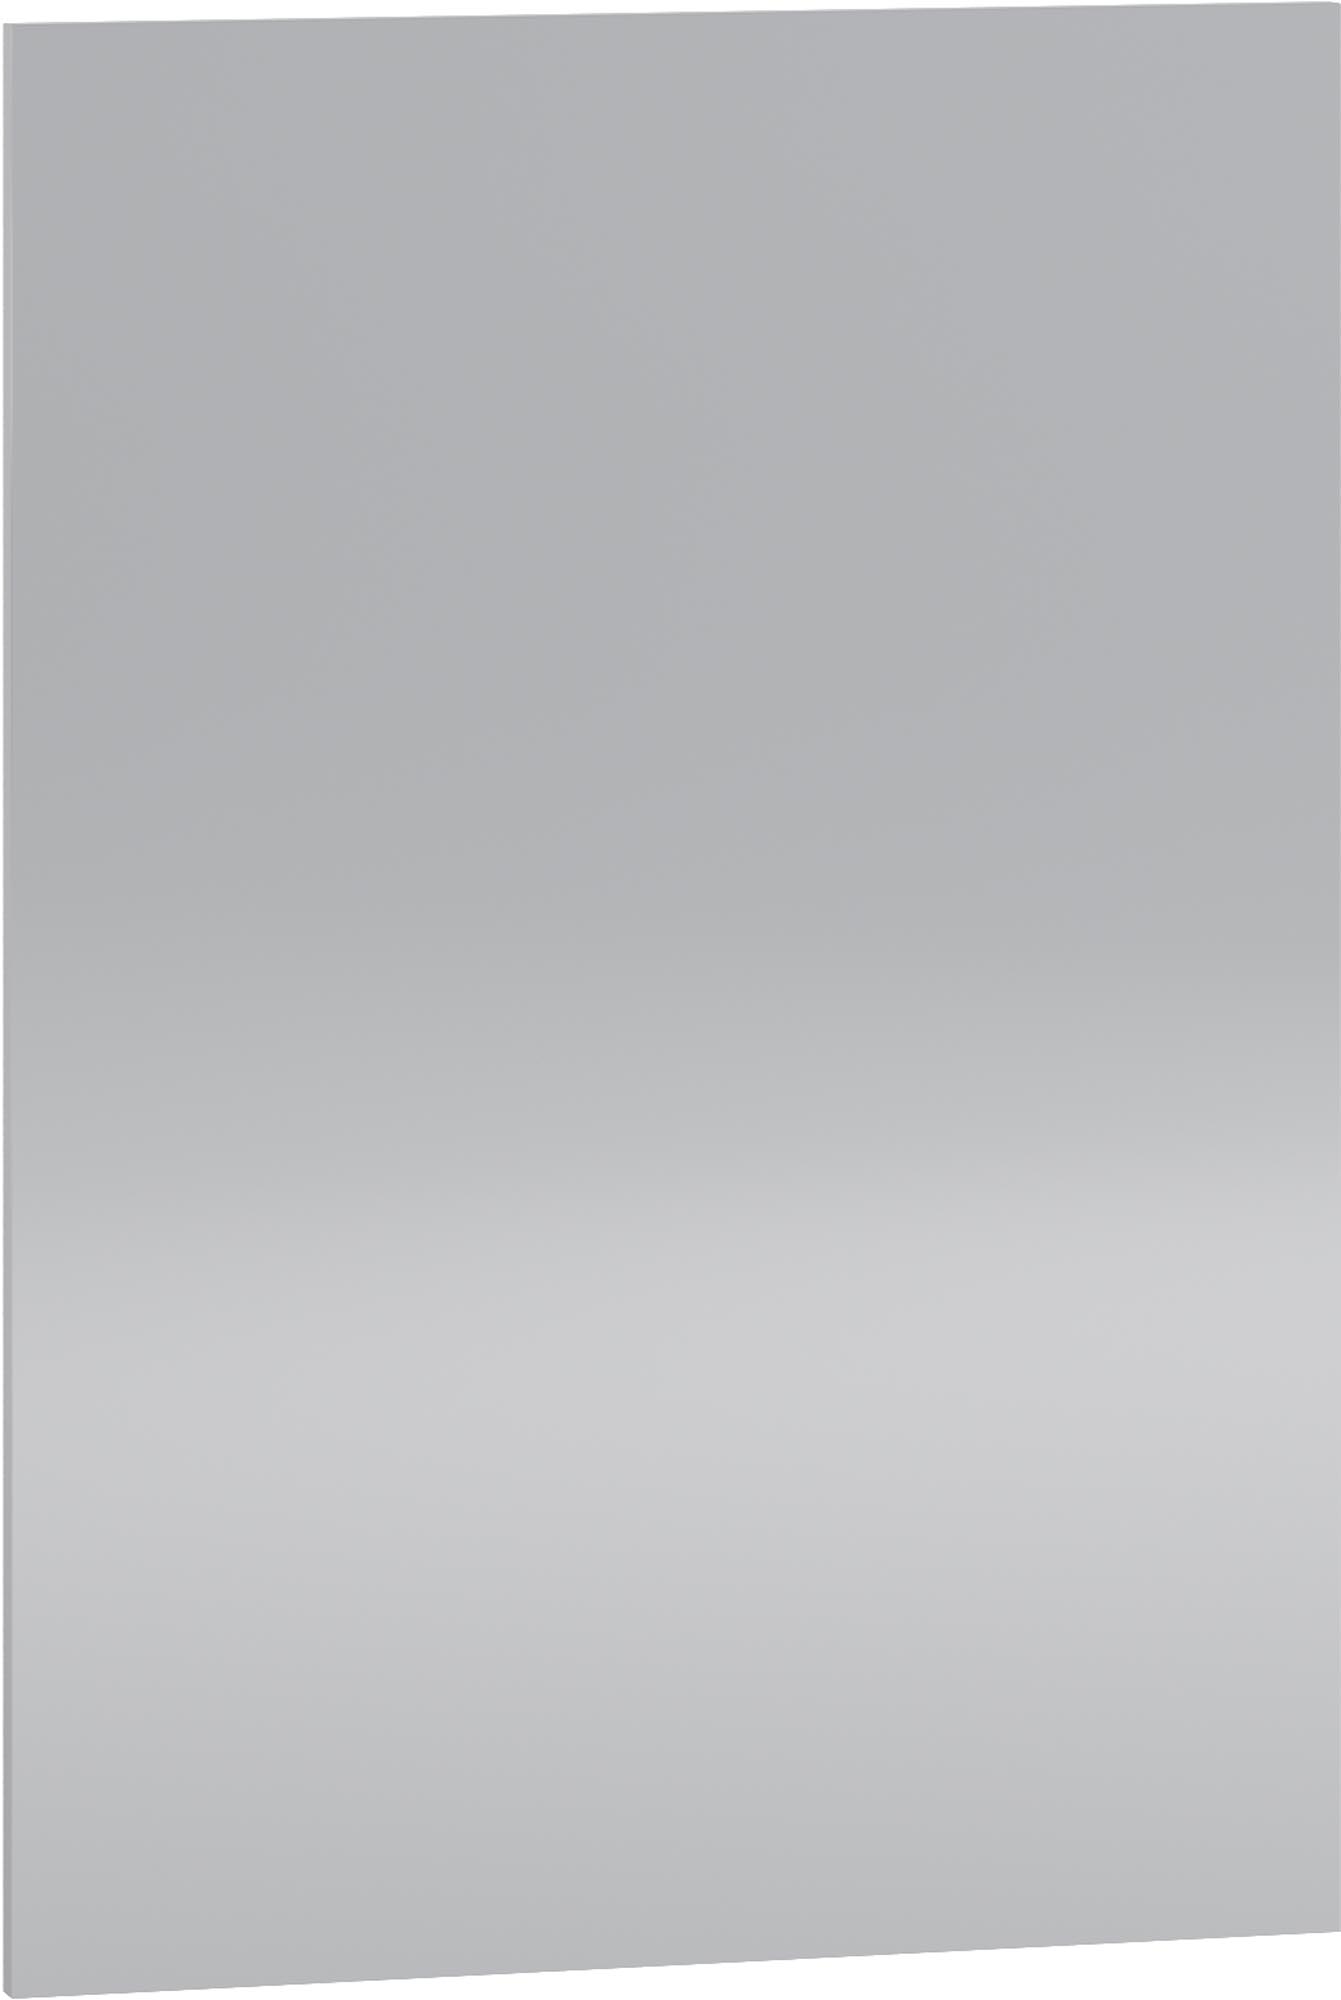 Bočný krycí panel VENTO DZ-72/57 - svetlosivá vento dz-72/57 maskownica boku Skrinky svetlý popol